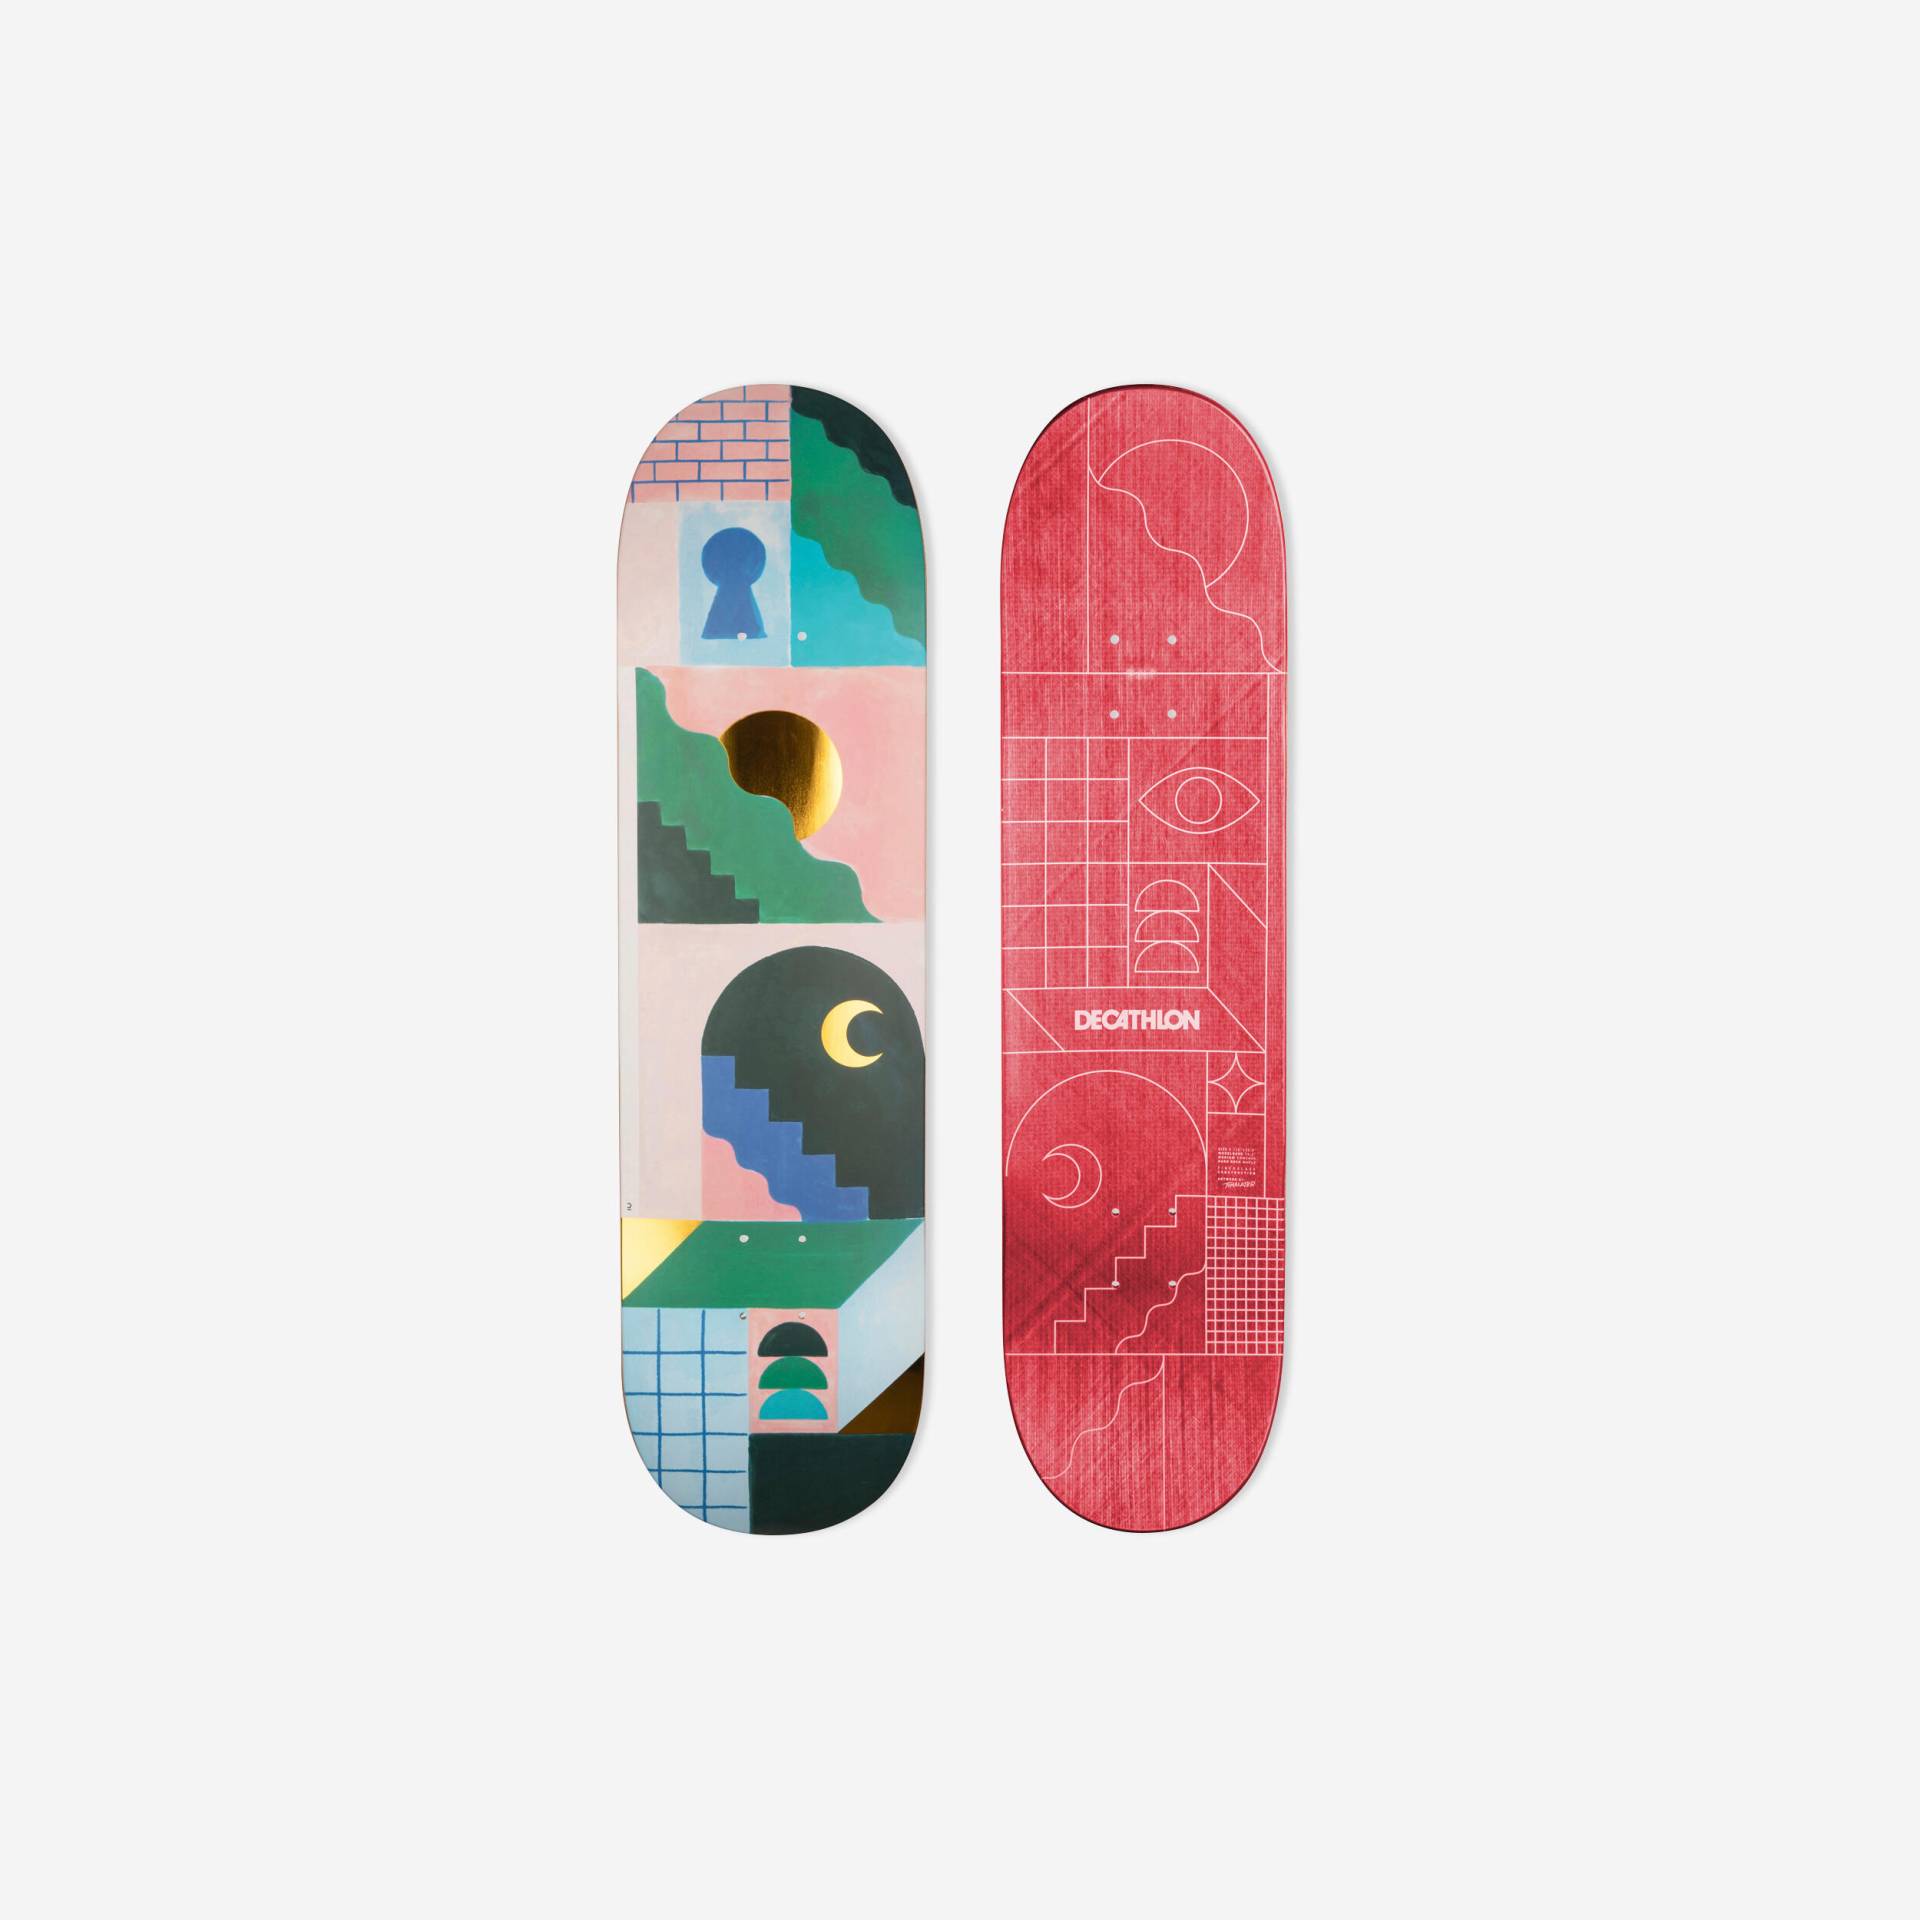 Skateboard Deck Composite 8,5" - DK900 FGC by Tomalater von Decathlon